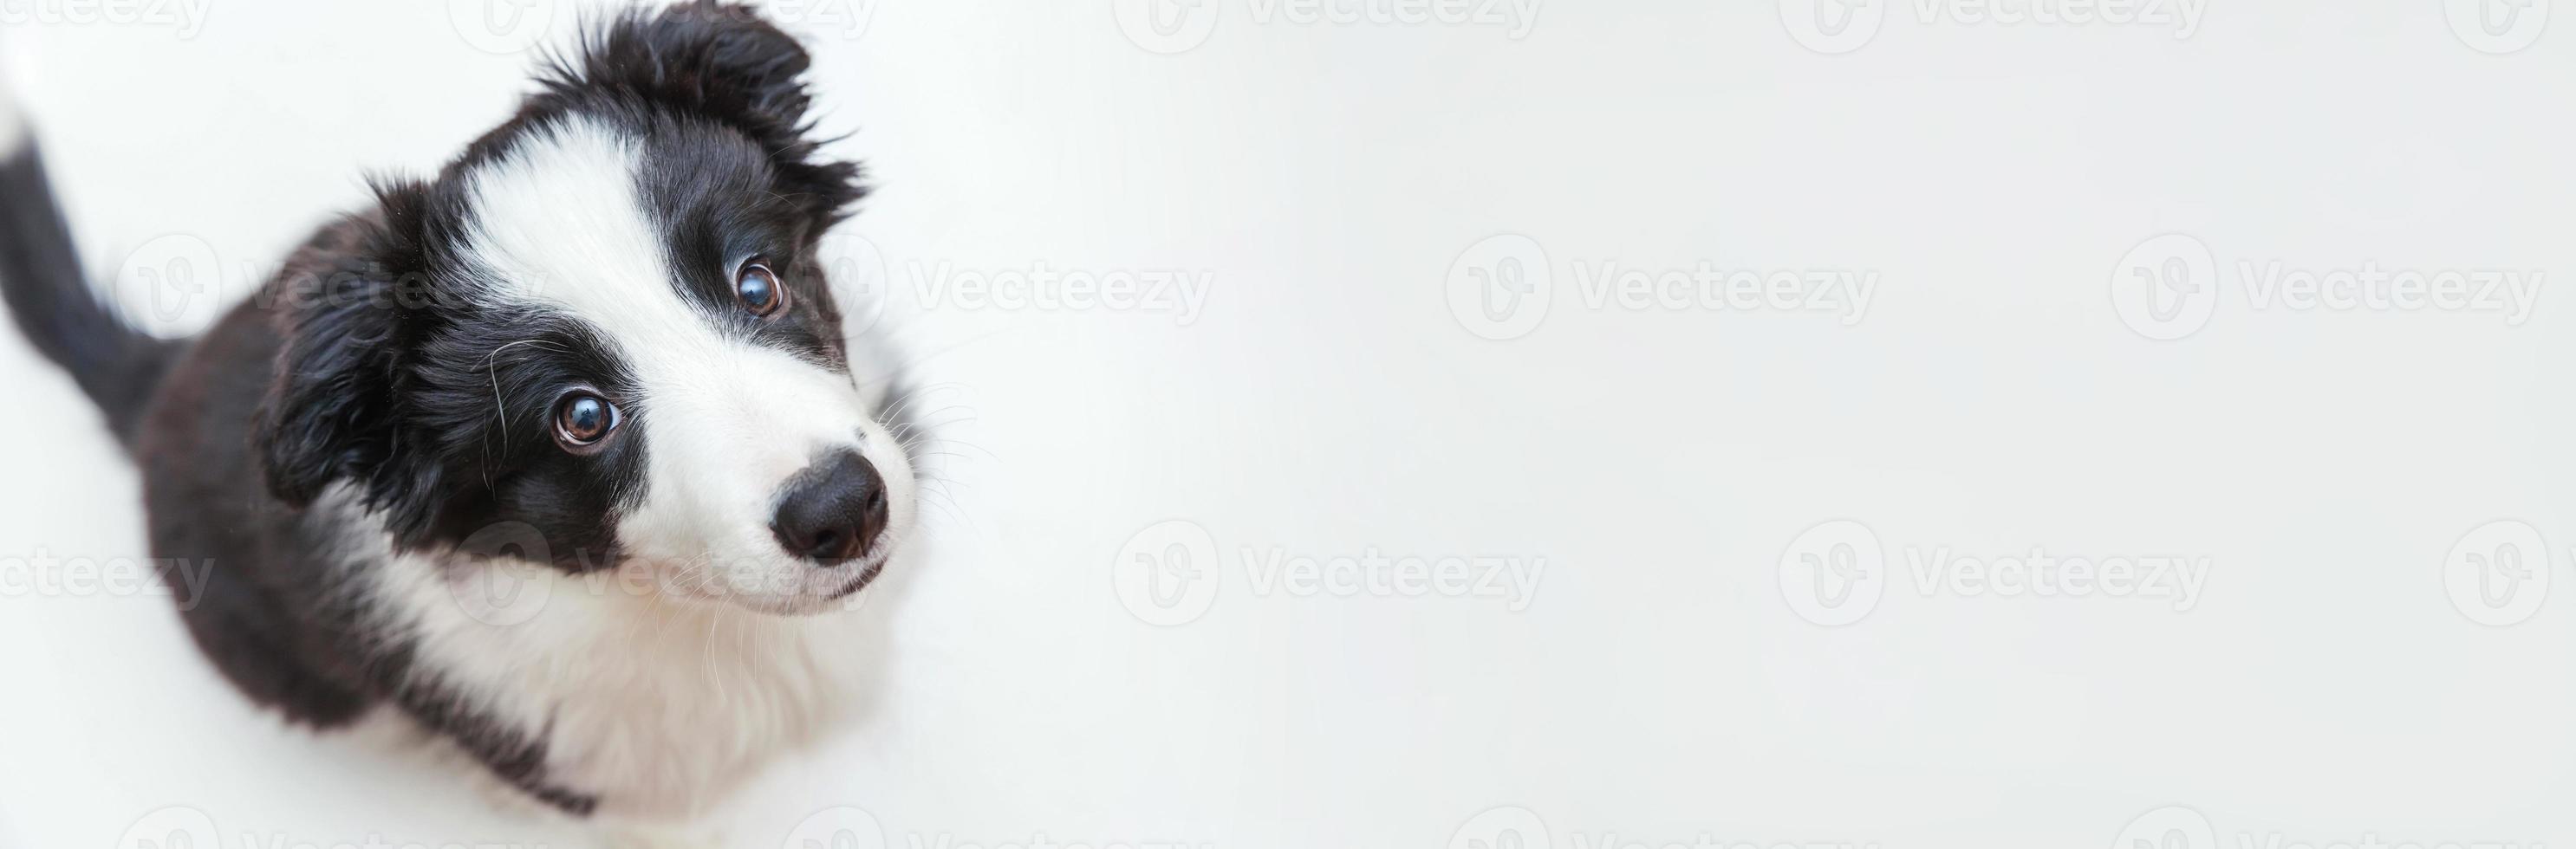 divertente ritratto in studio di carino smilling cucciolo di cane border collie isolato su sfondo bianco. concetto di cura degli animali e animali. striscione foto